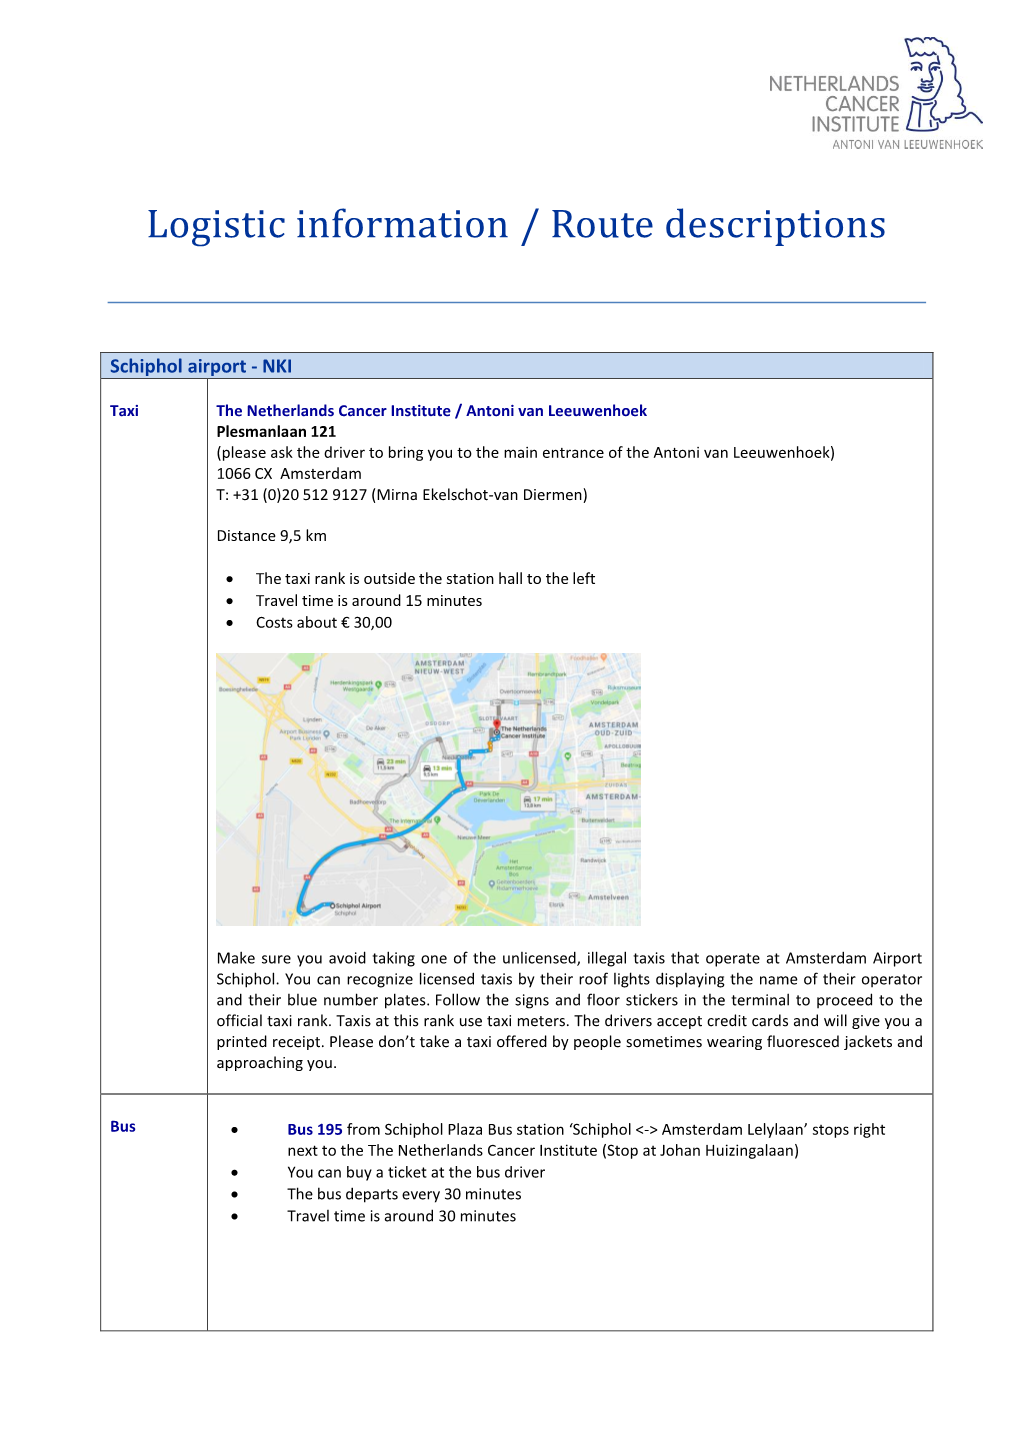 Logistic Information / Route Descriptions